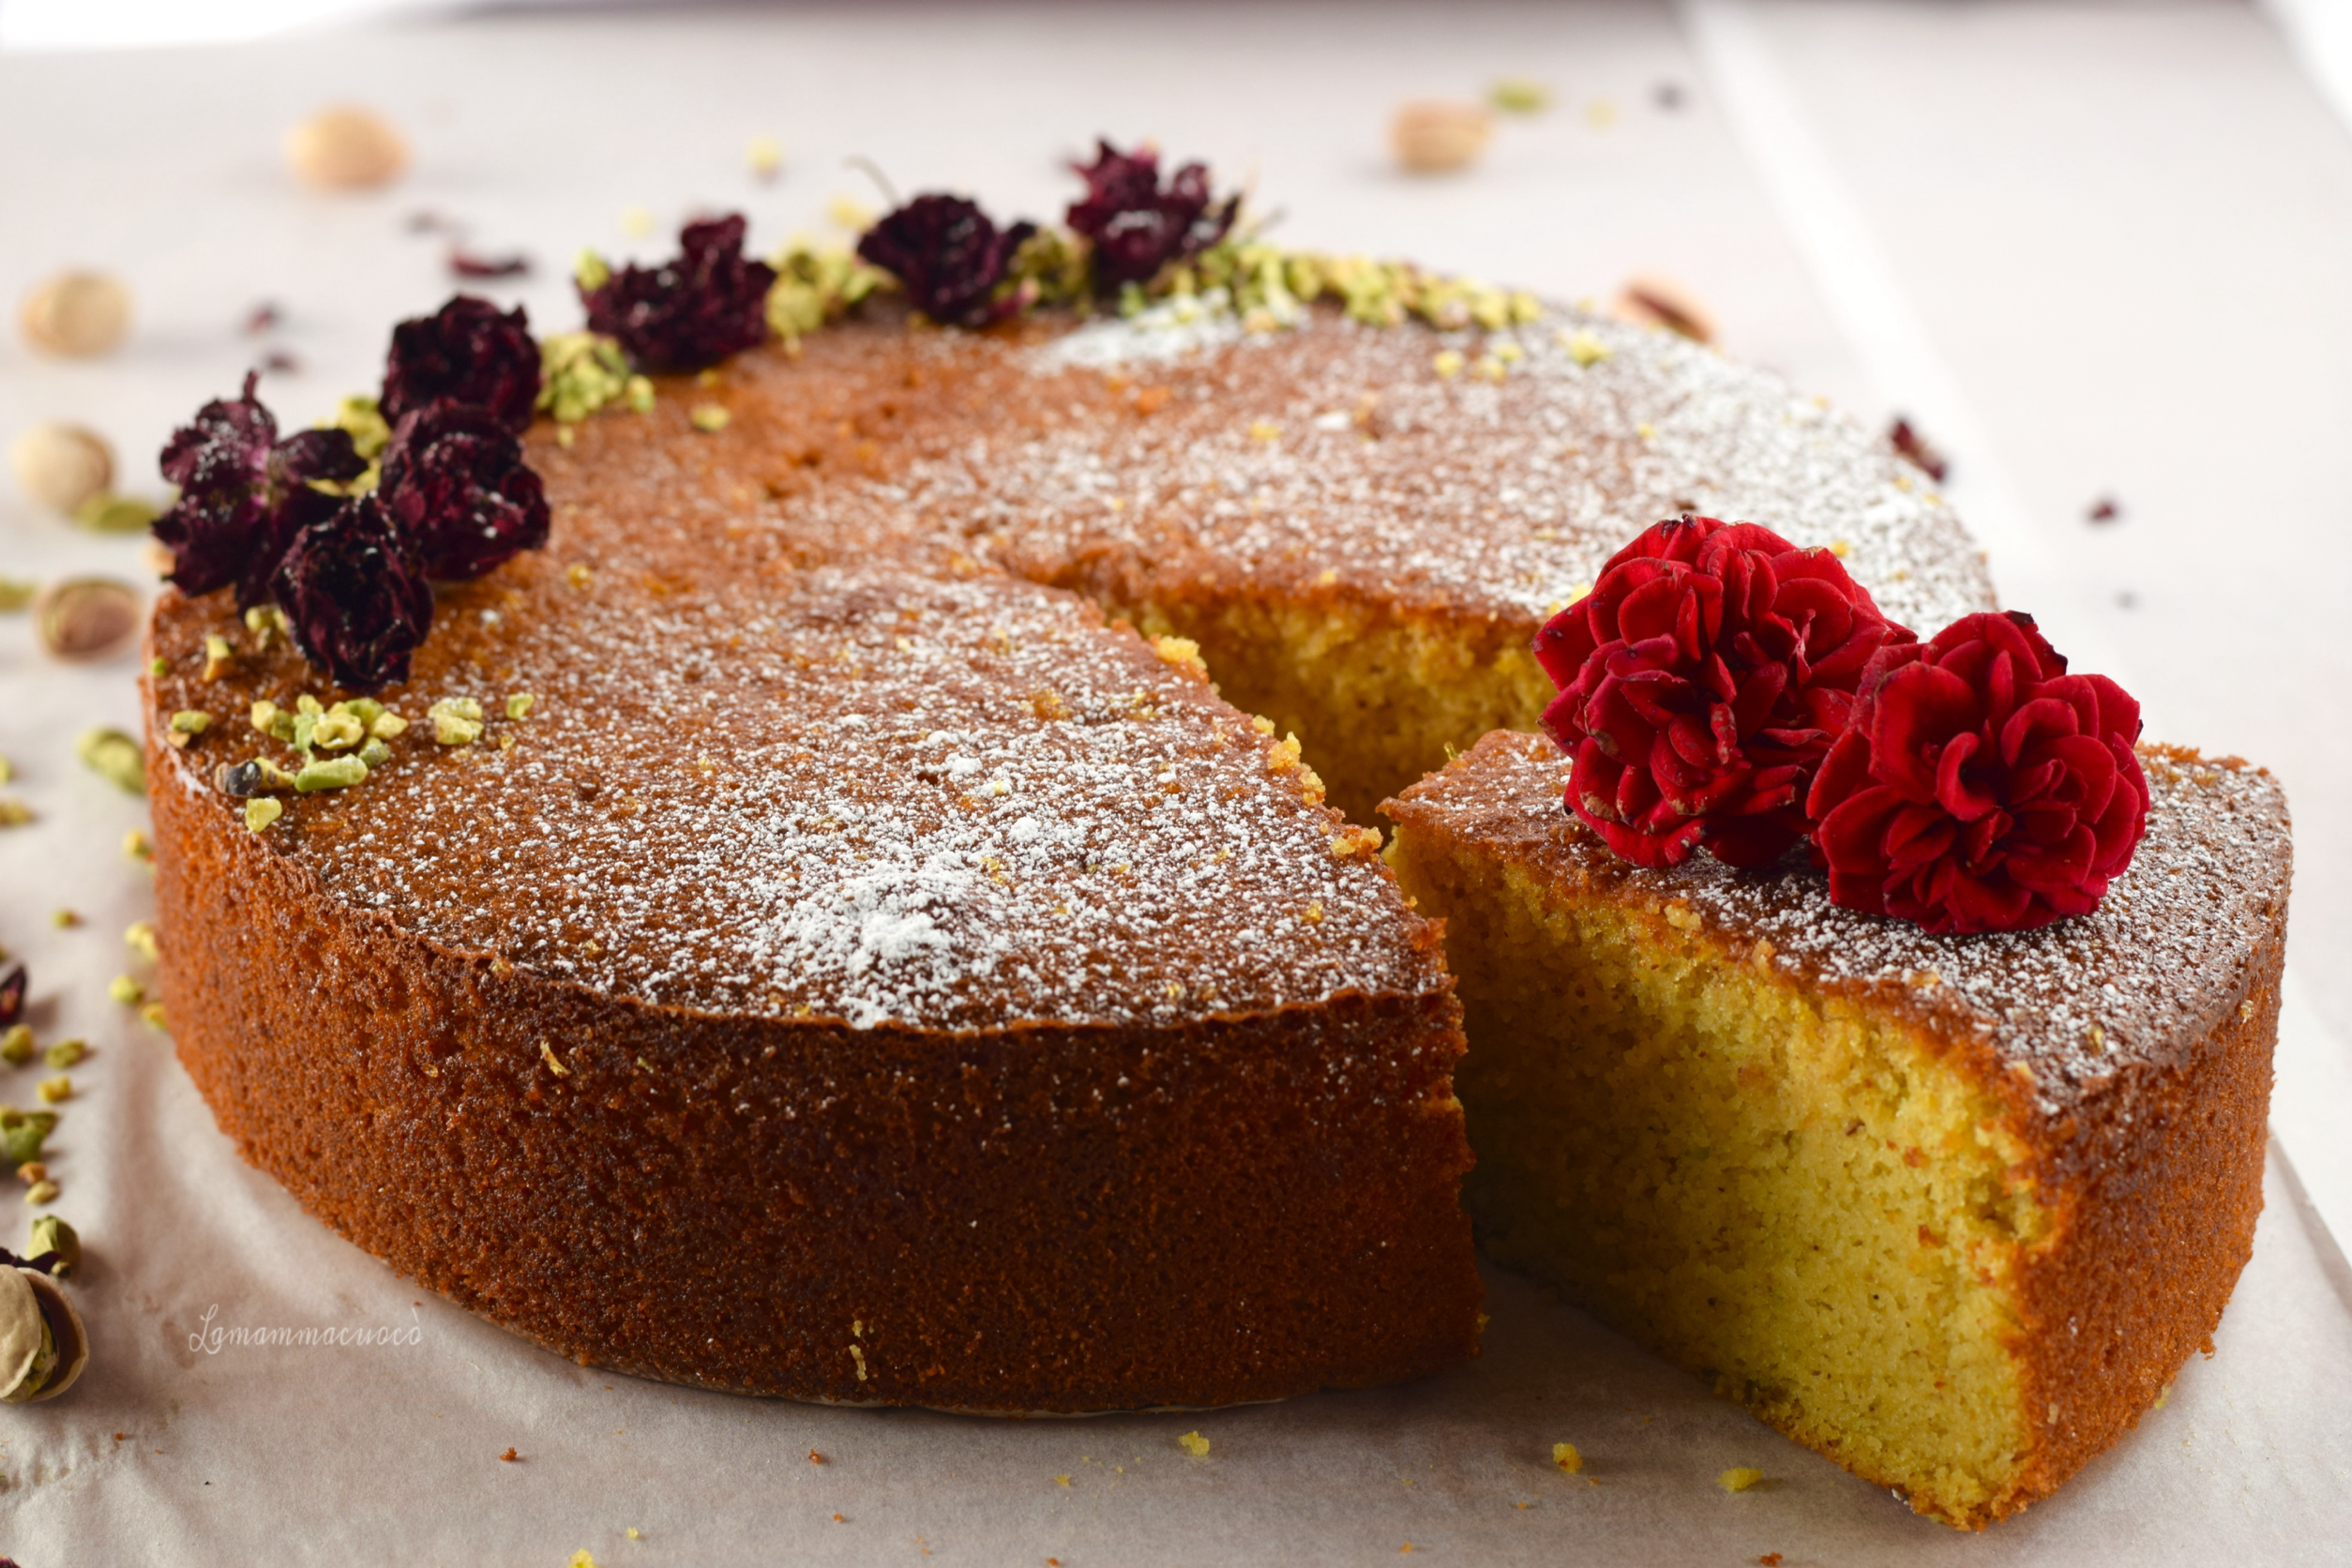 Torta Persiana dell’Amore – Persian Love Cake